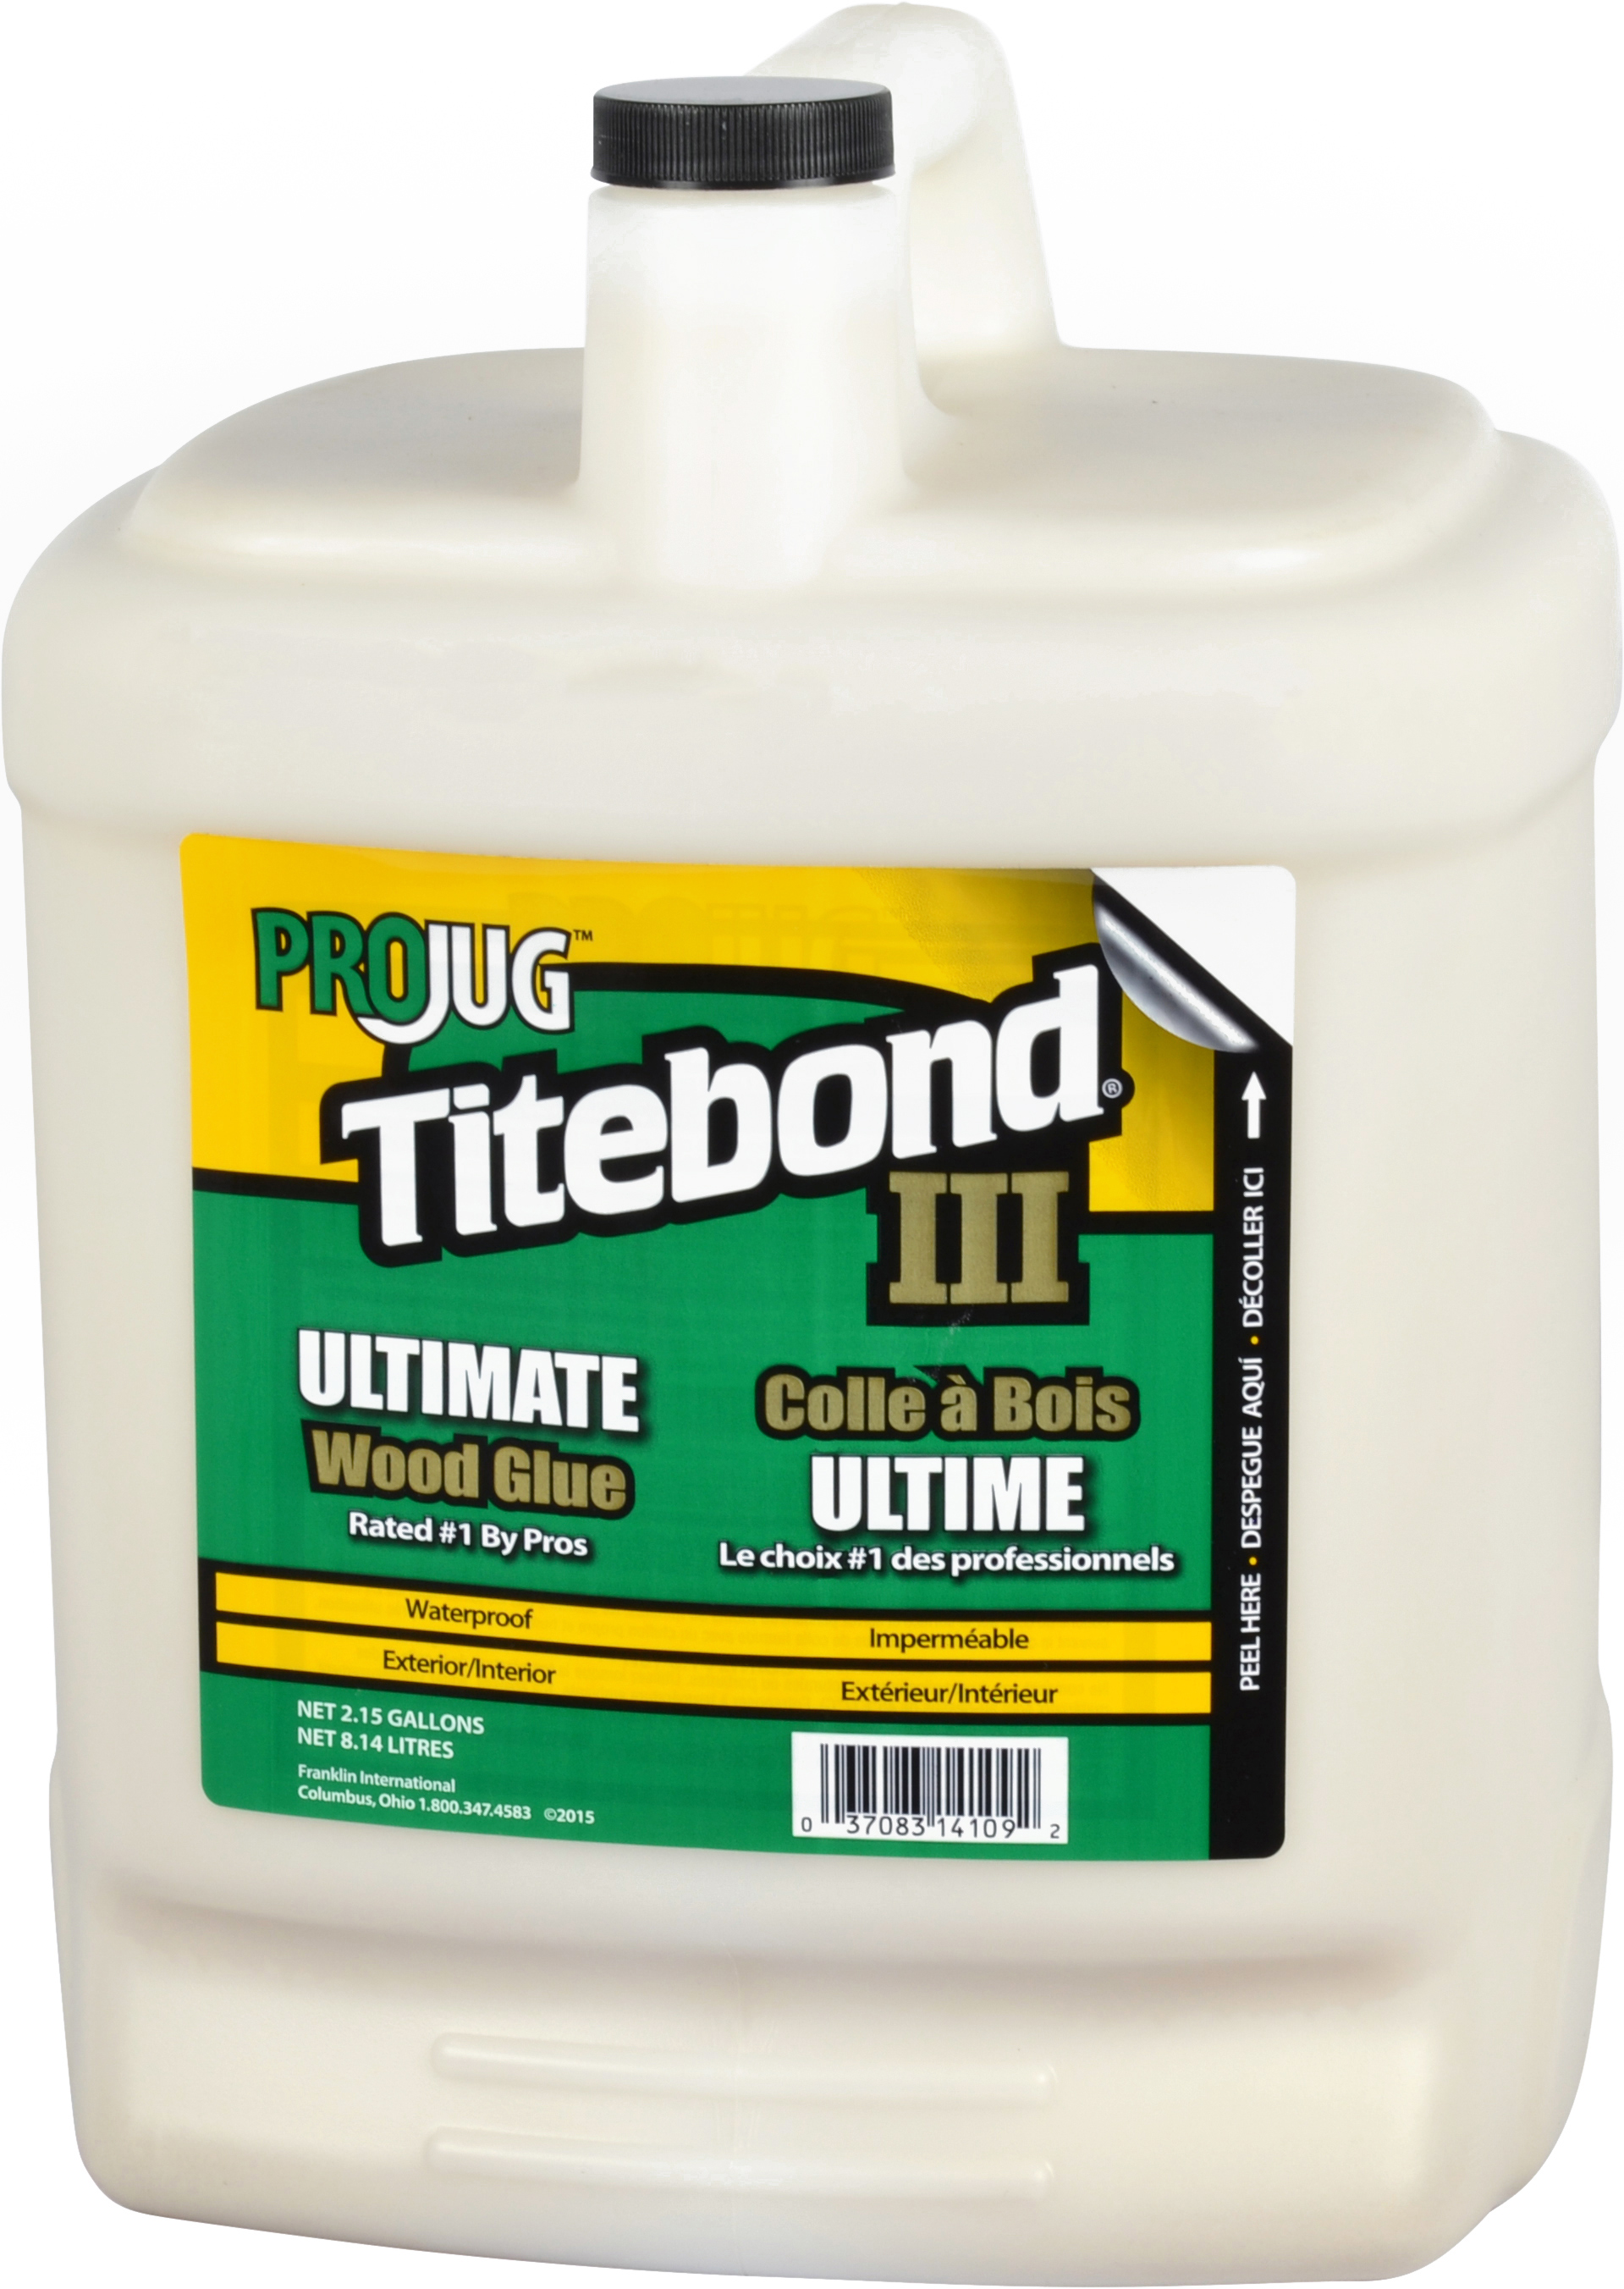 Titebond III Ultimate Wood Glue - Titebond - Ardec - Finishing Products